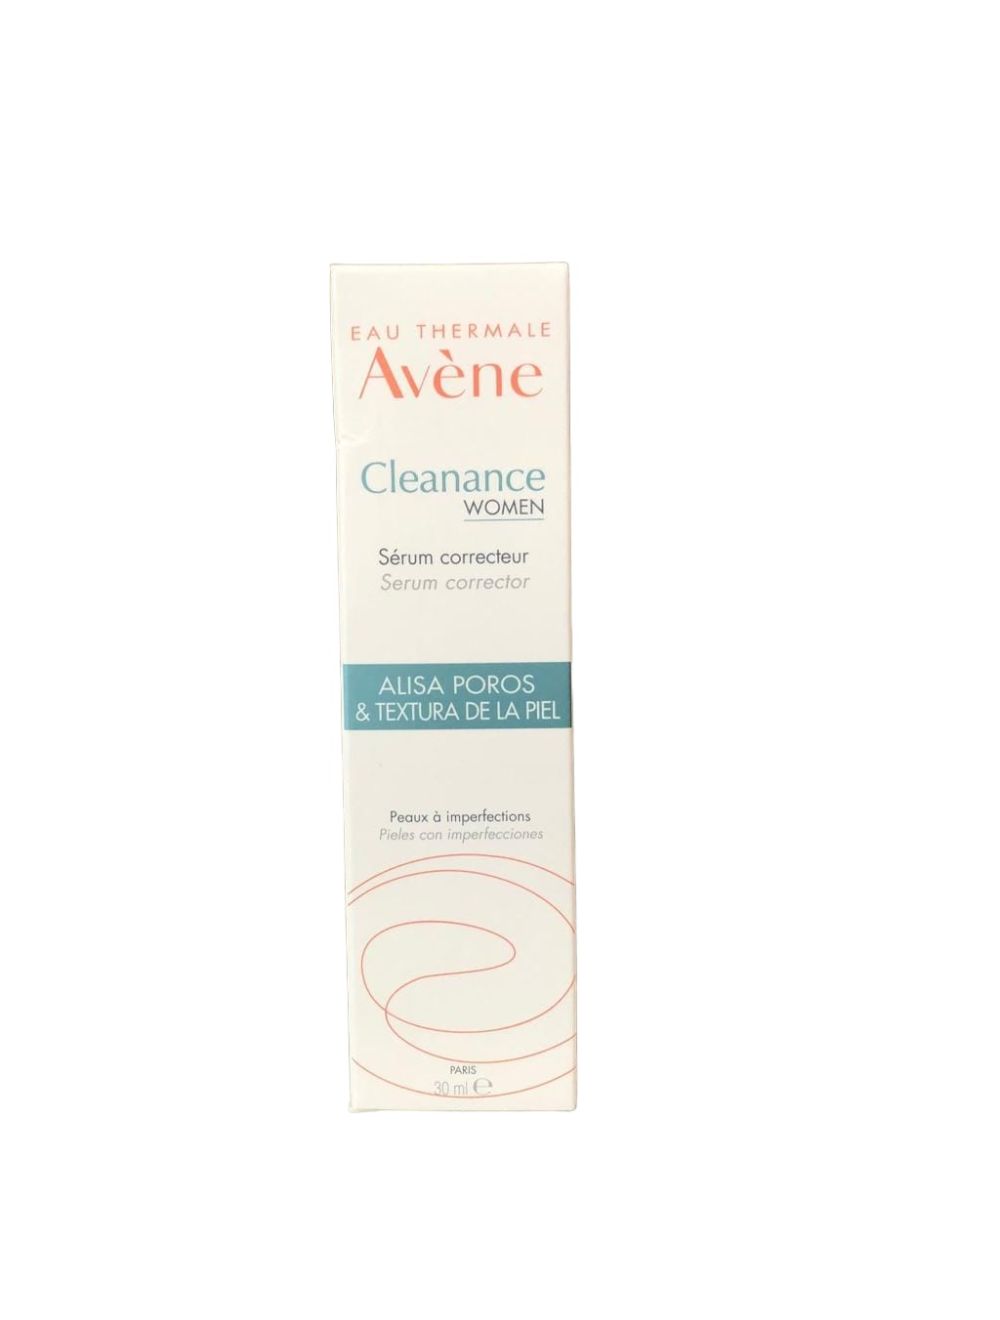 Avene cleanance women serum corrector 30ml.